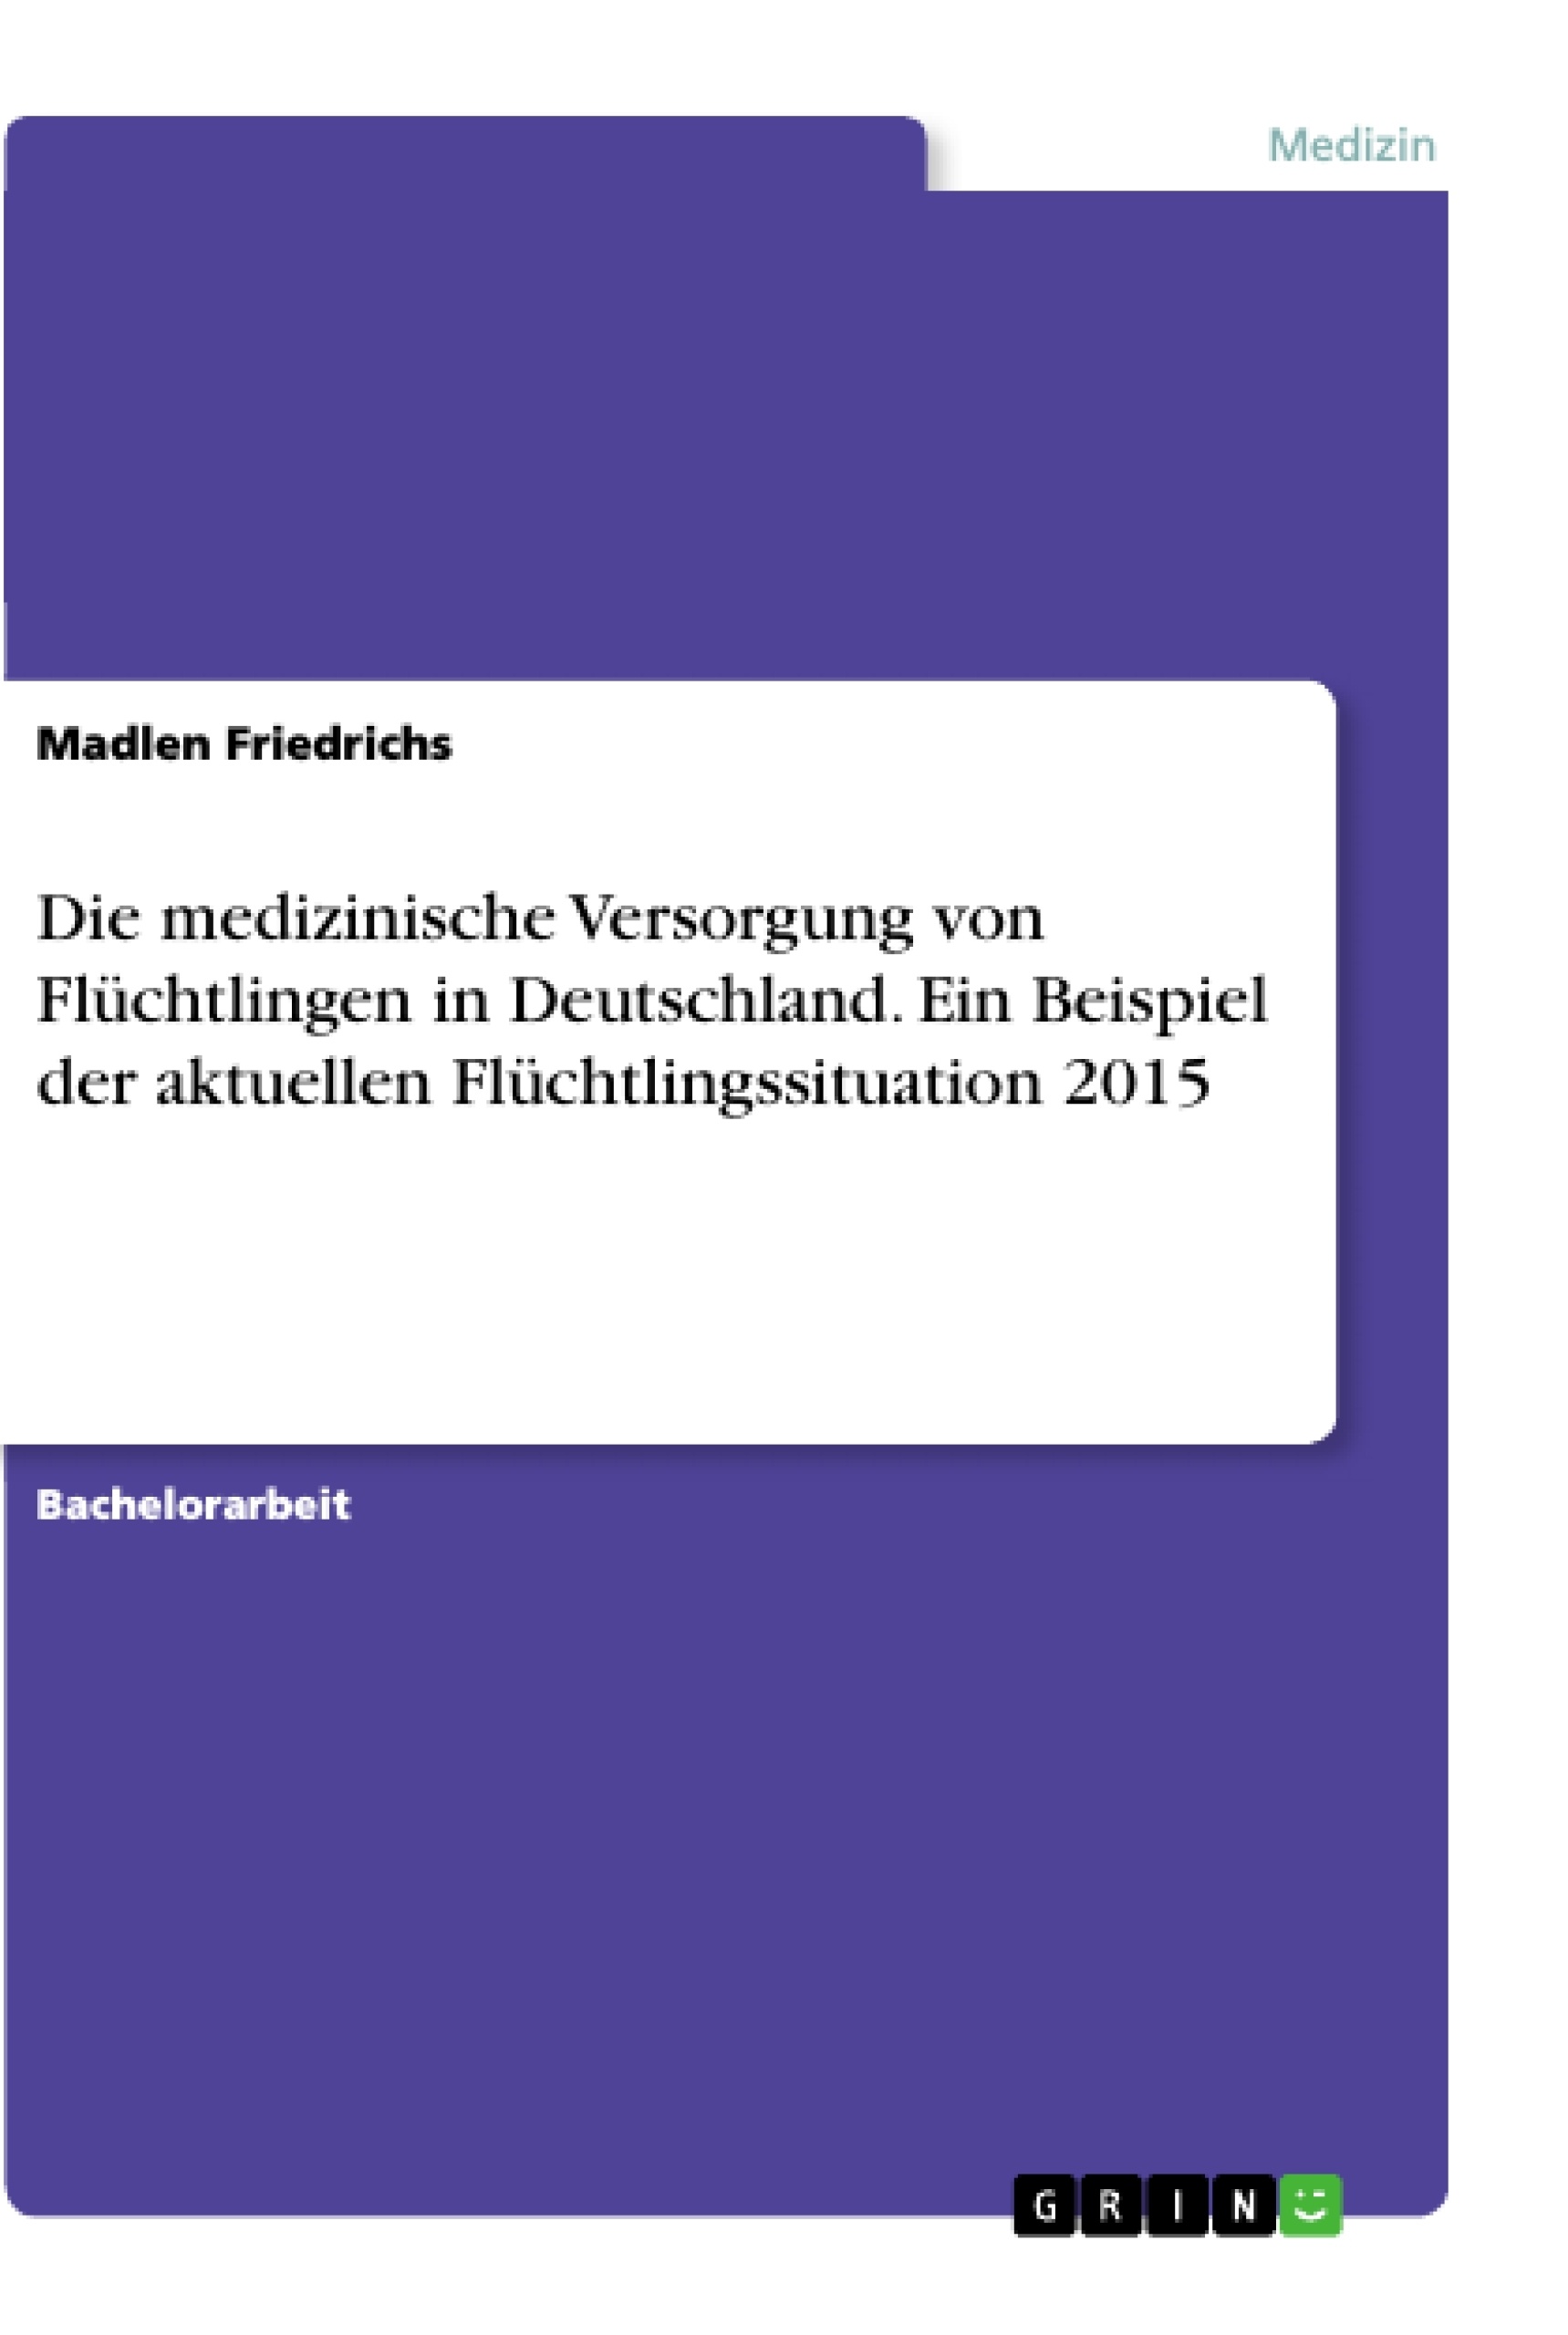 Title: Die medizinische Versorgung von Flüchtlingen in Deutschland. Ein Beispiel der aktuellen Flüchtlingssituation 2015